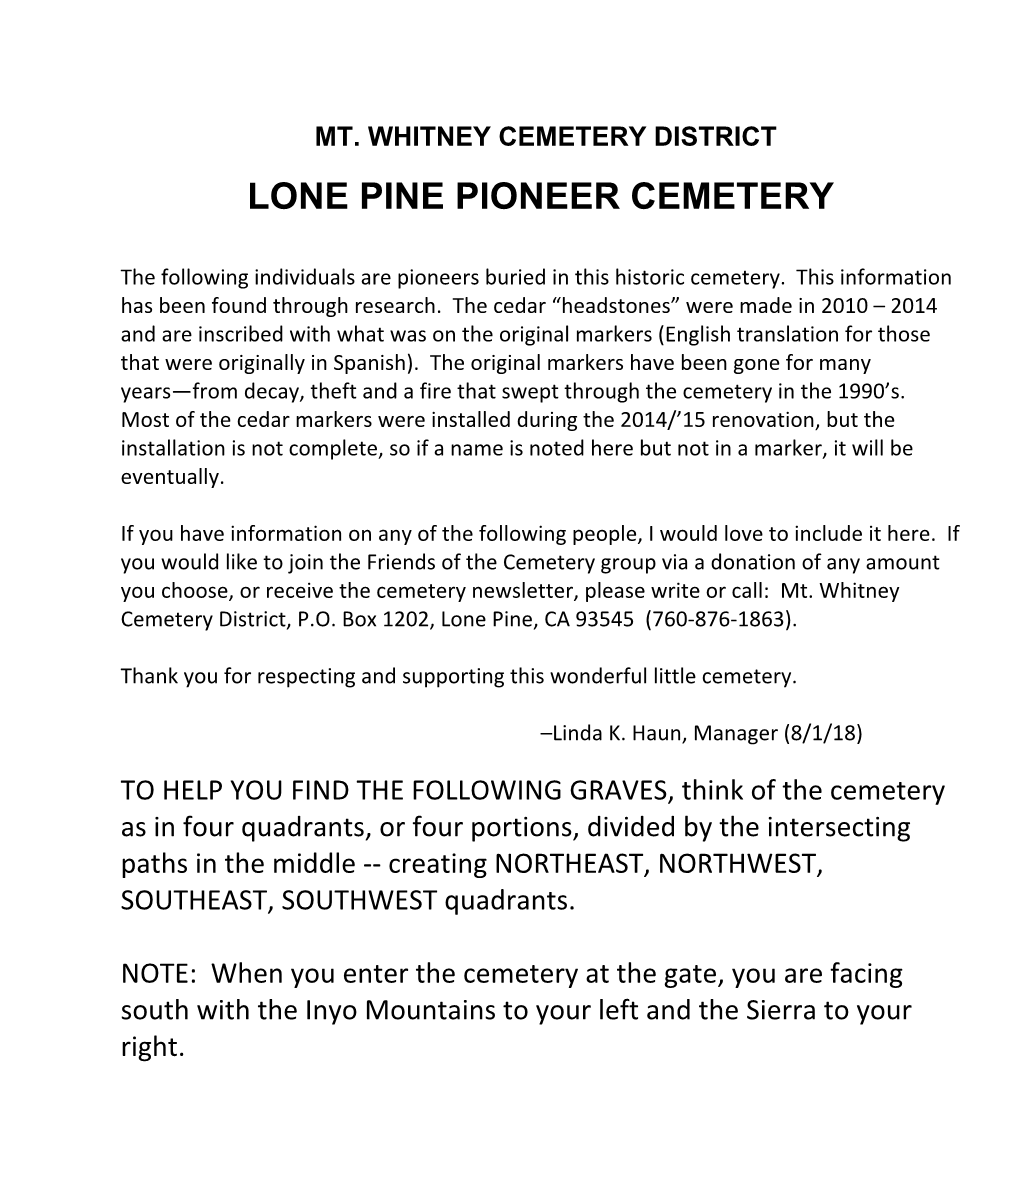 Lone Pine Pioneer Cemetery History